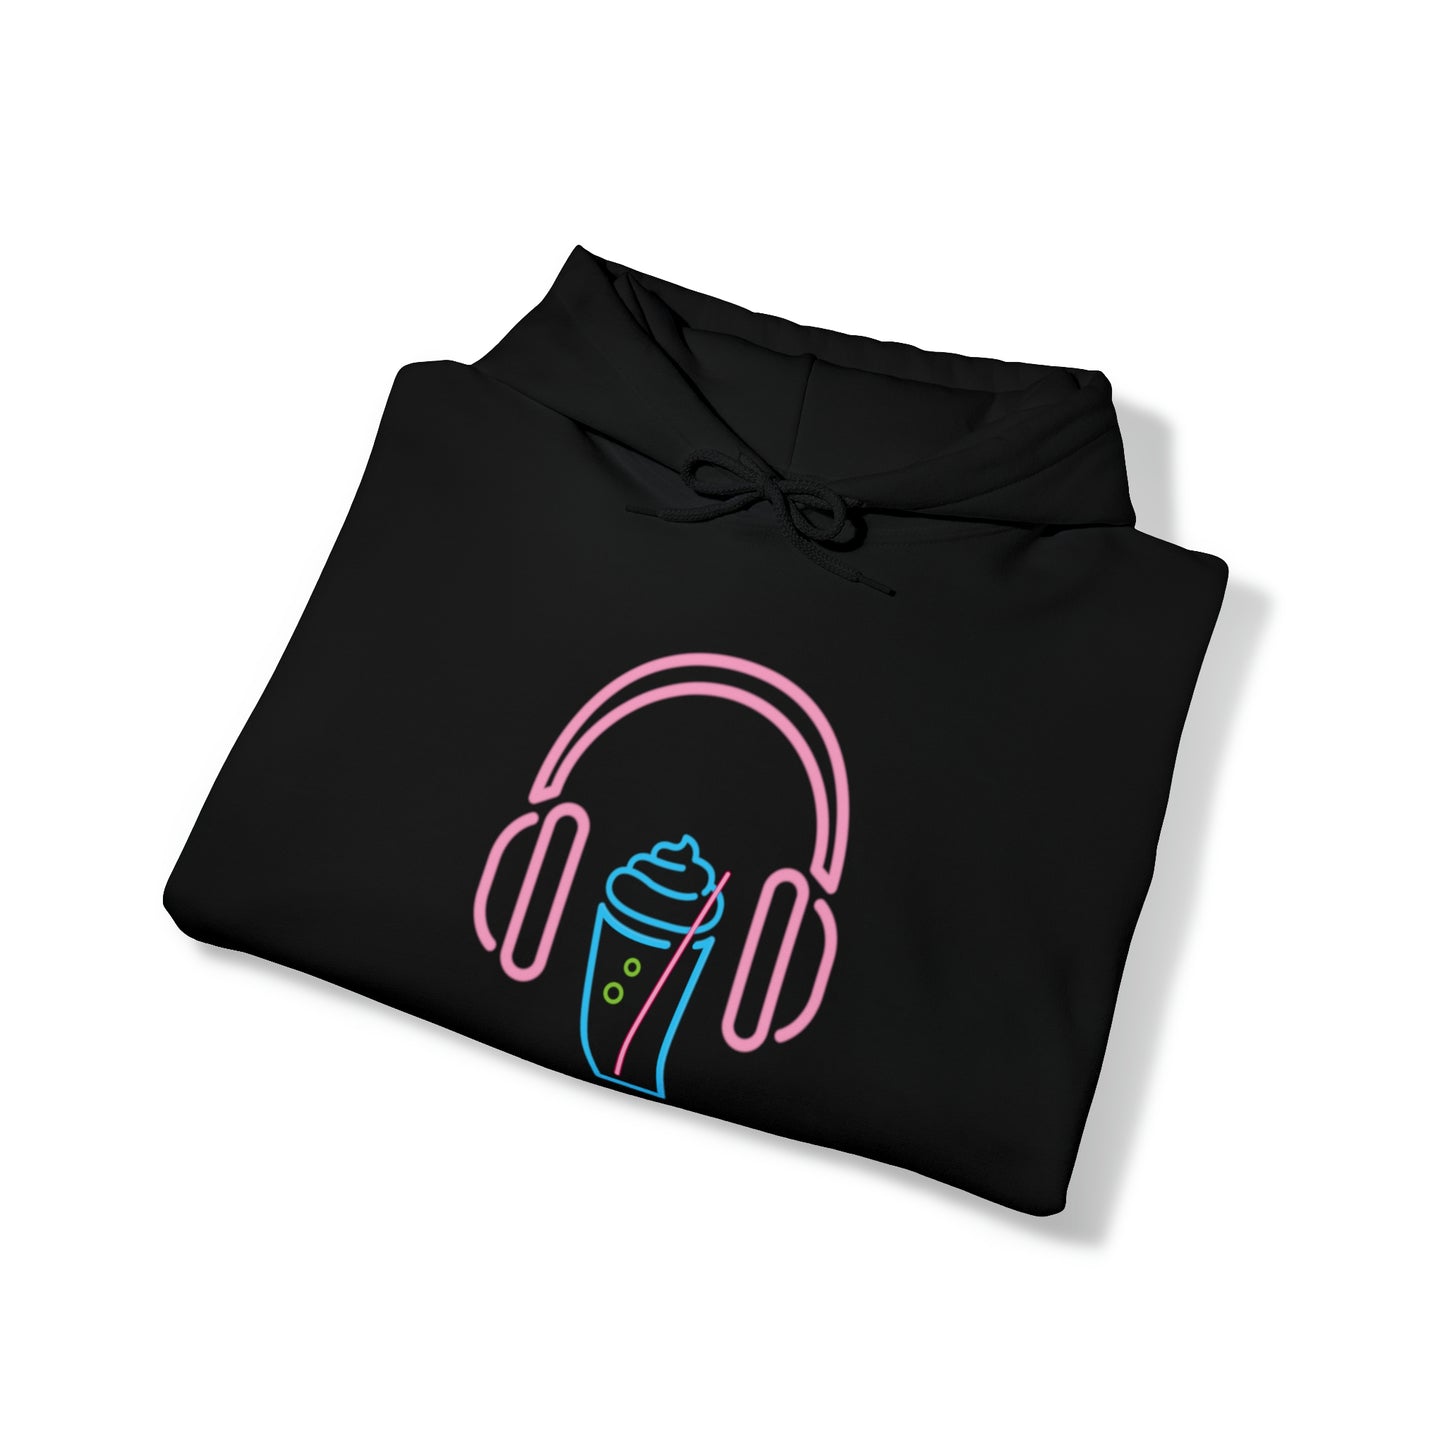 Slurpee Neon Headphone - Unisex Heavy Blend™ Hooded Sweatshirt